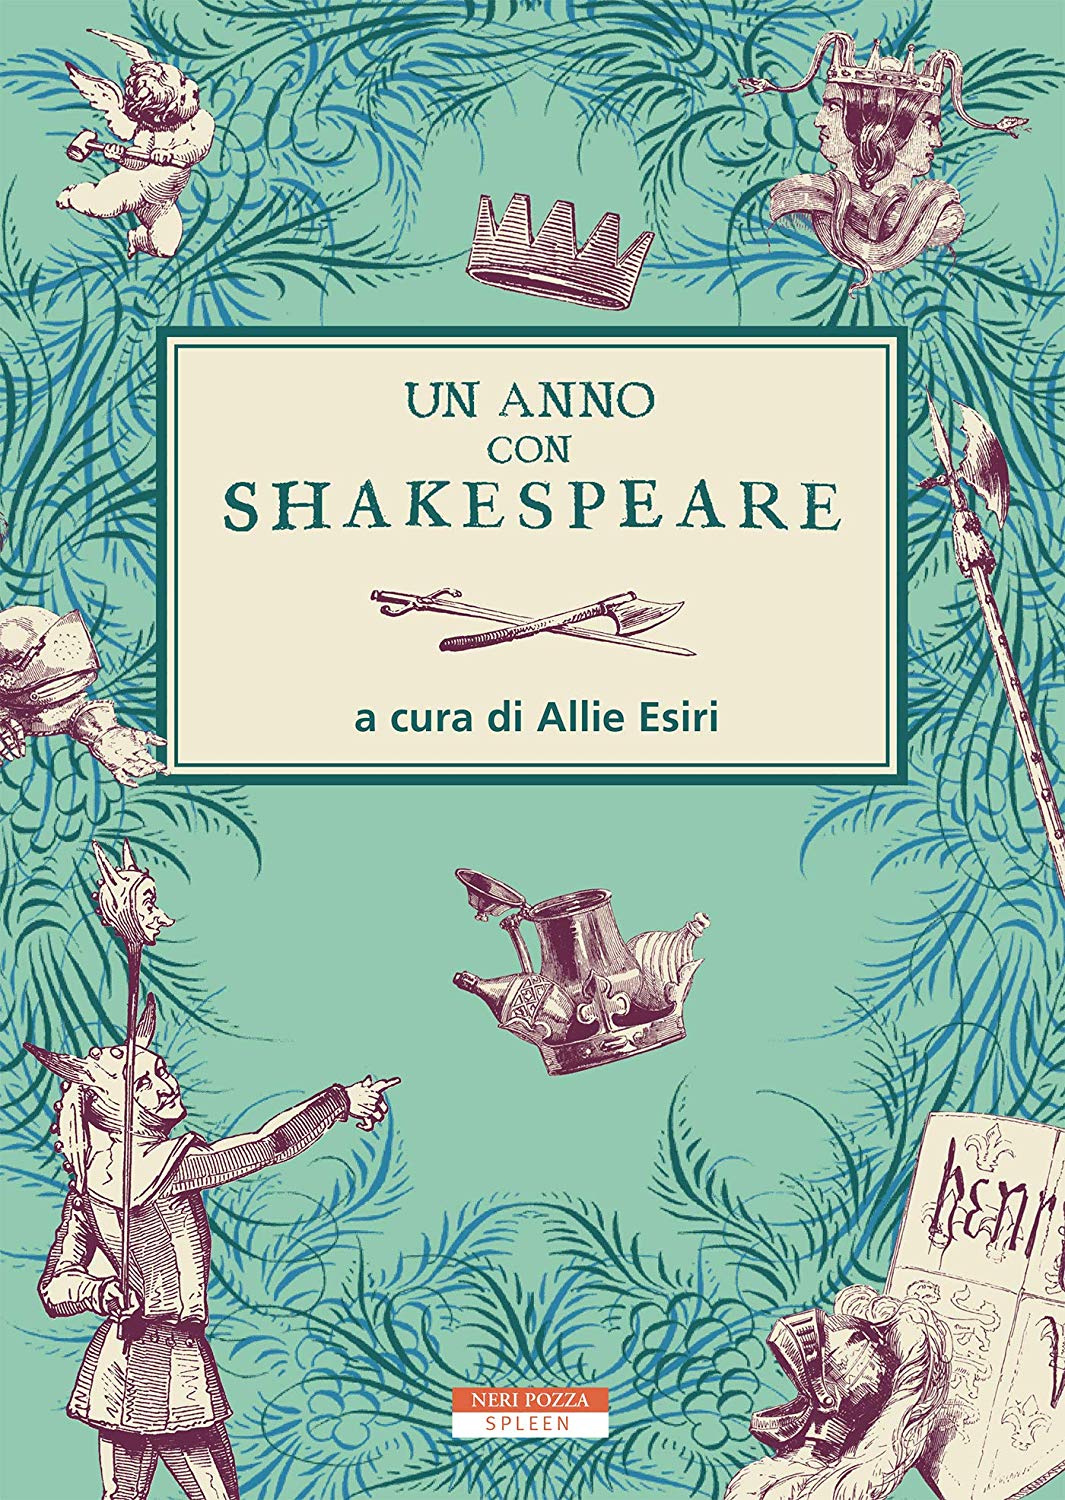 Libri Anno Con Shakespeare (Un) NUOVO SIGILLATO, EDIZIONE DEL 28/11/2019 SUBITO DISPONIBILE